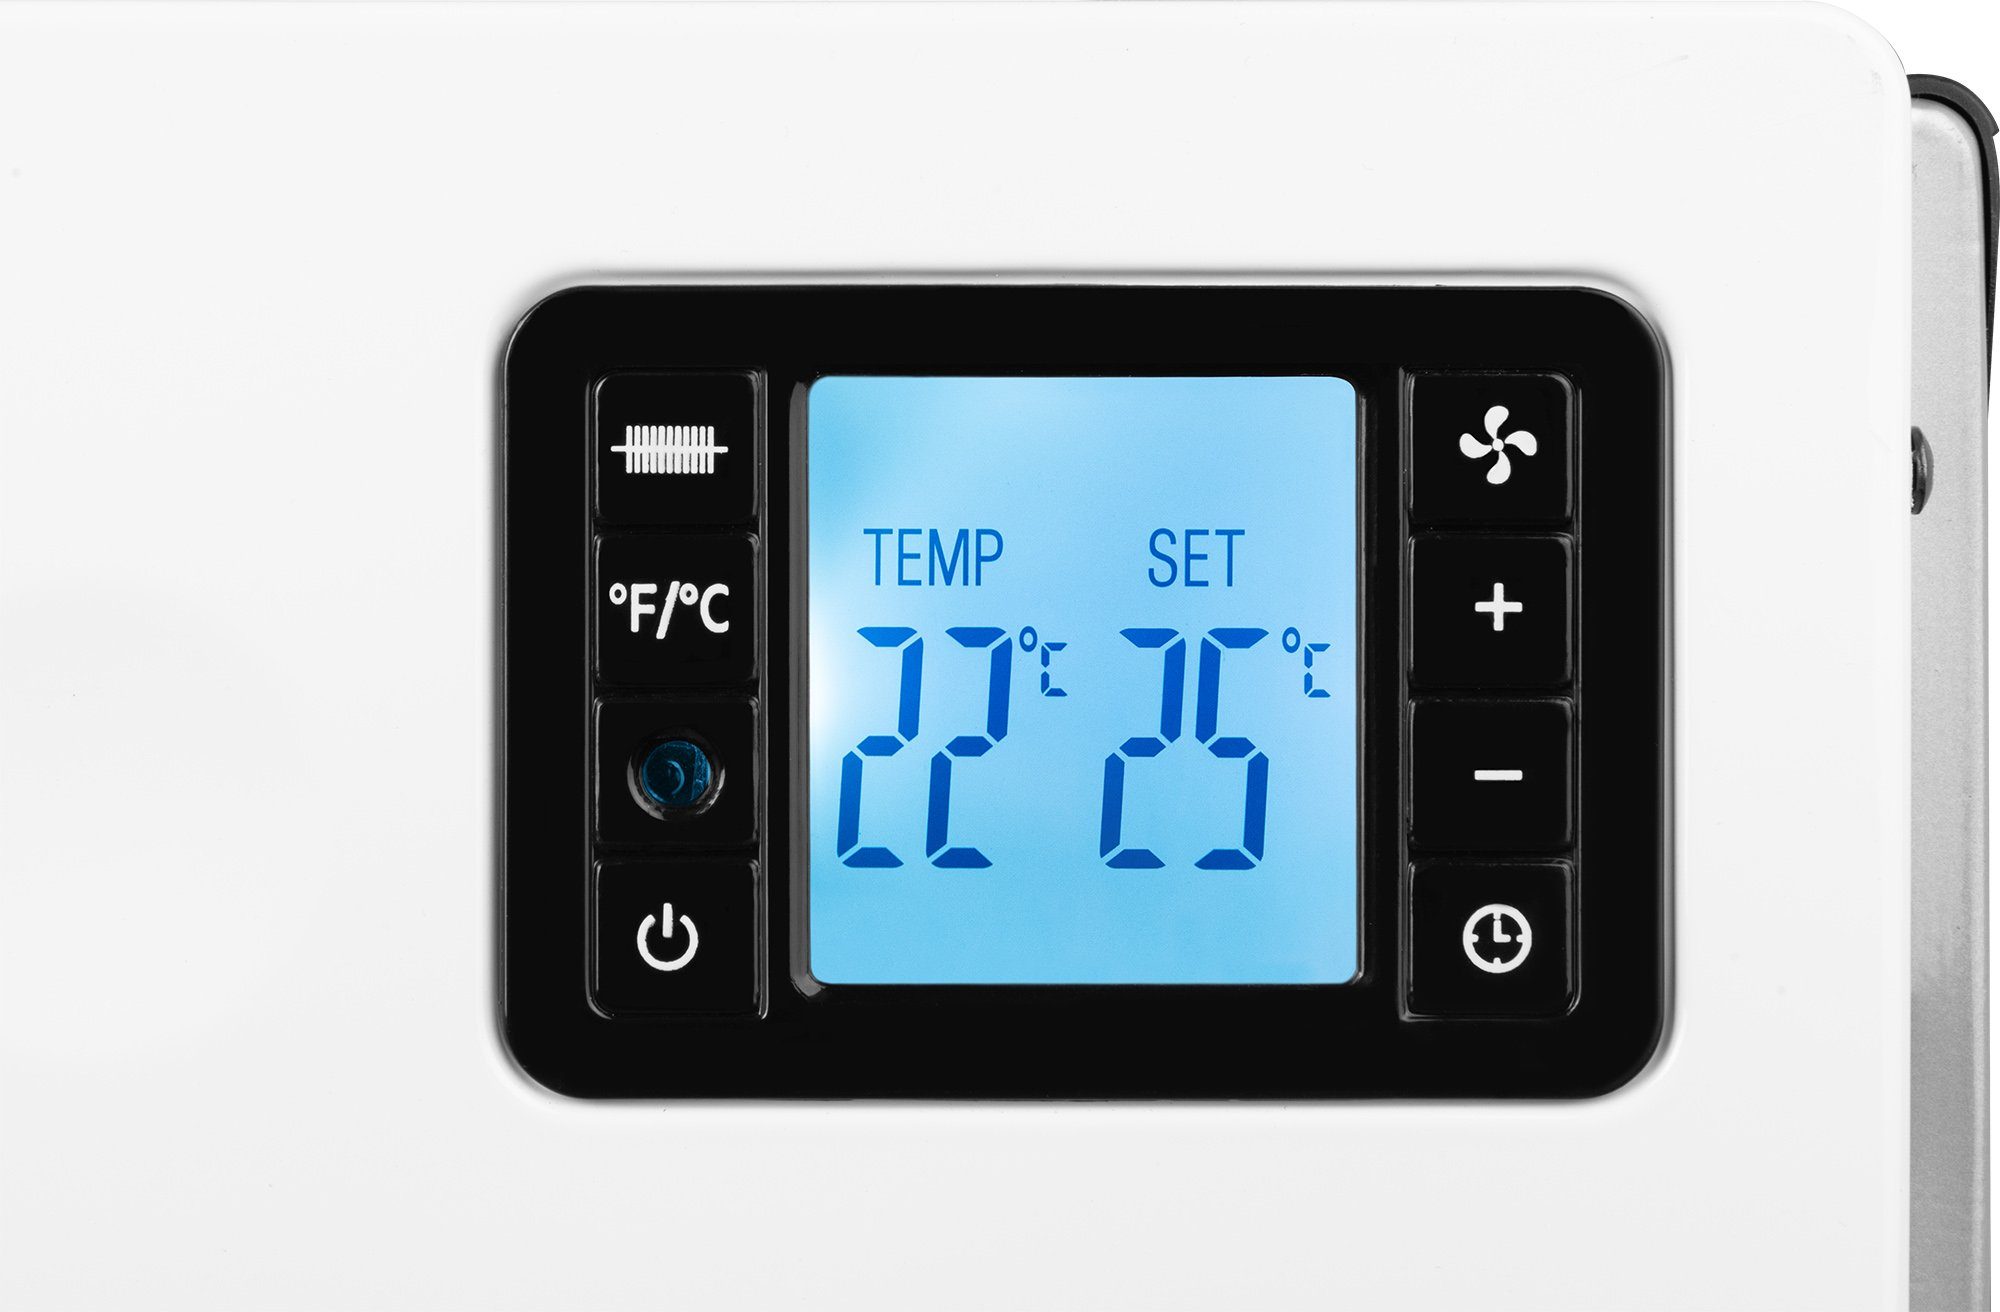 Thermostat, Ventilator White, 2080 Stufenlos Eingebauter TK regulierbarer W, ECG DR 2000 Konvektor